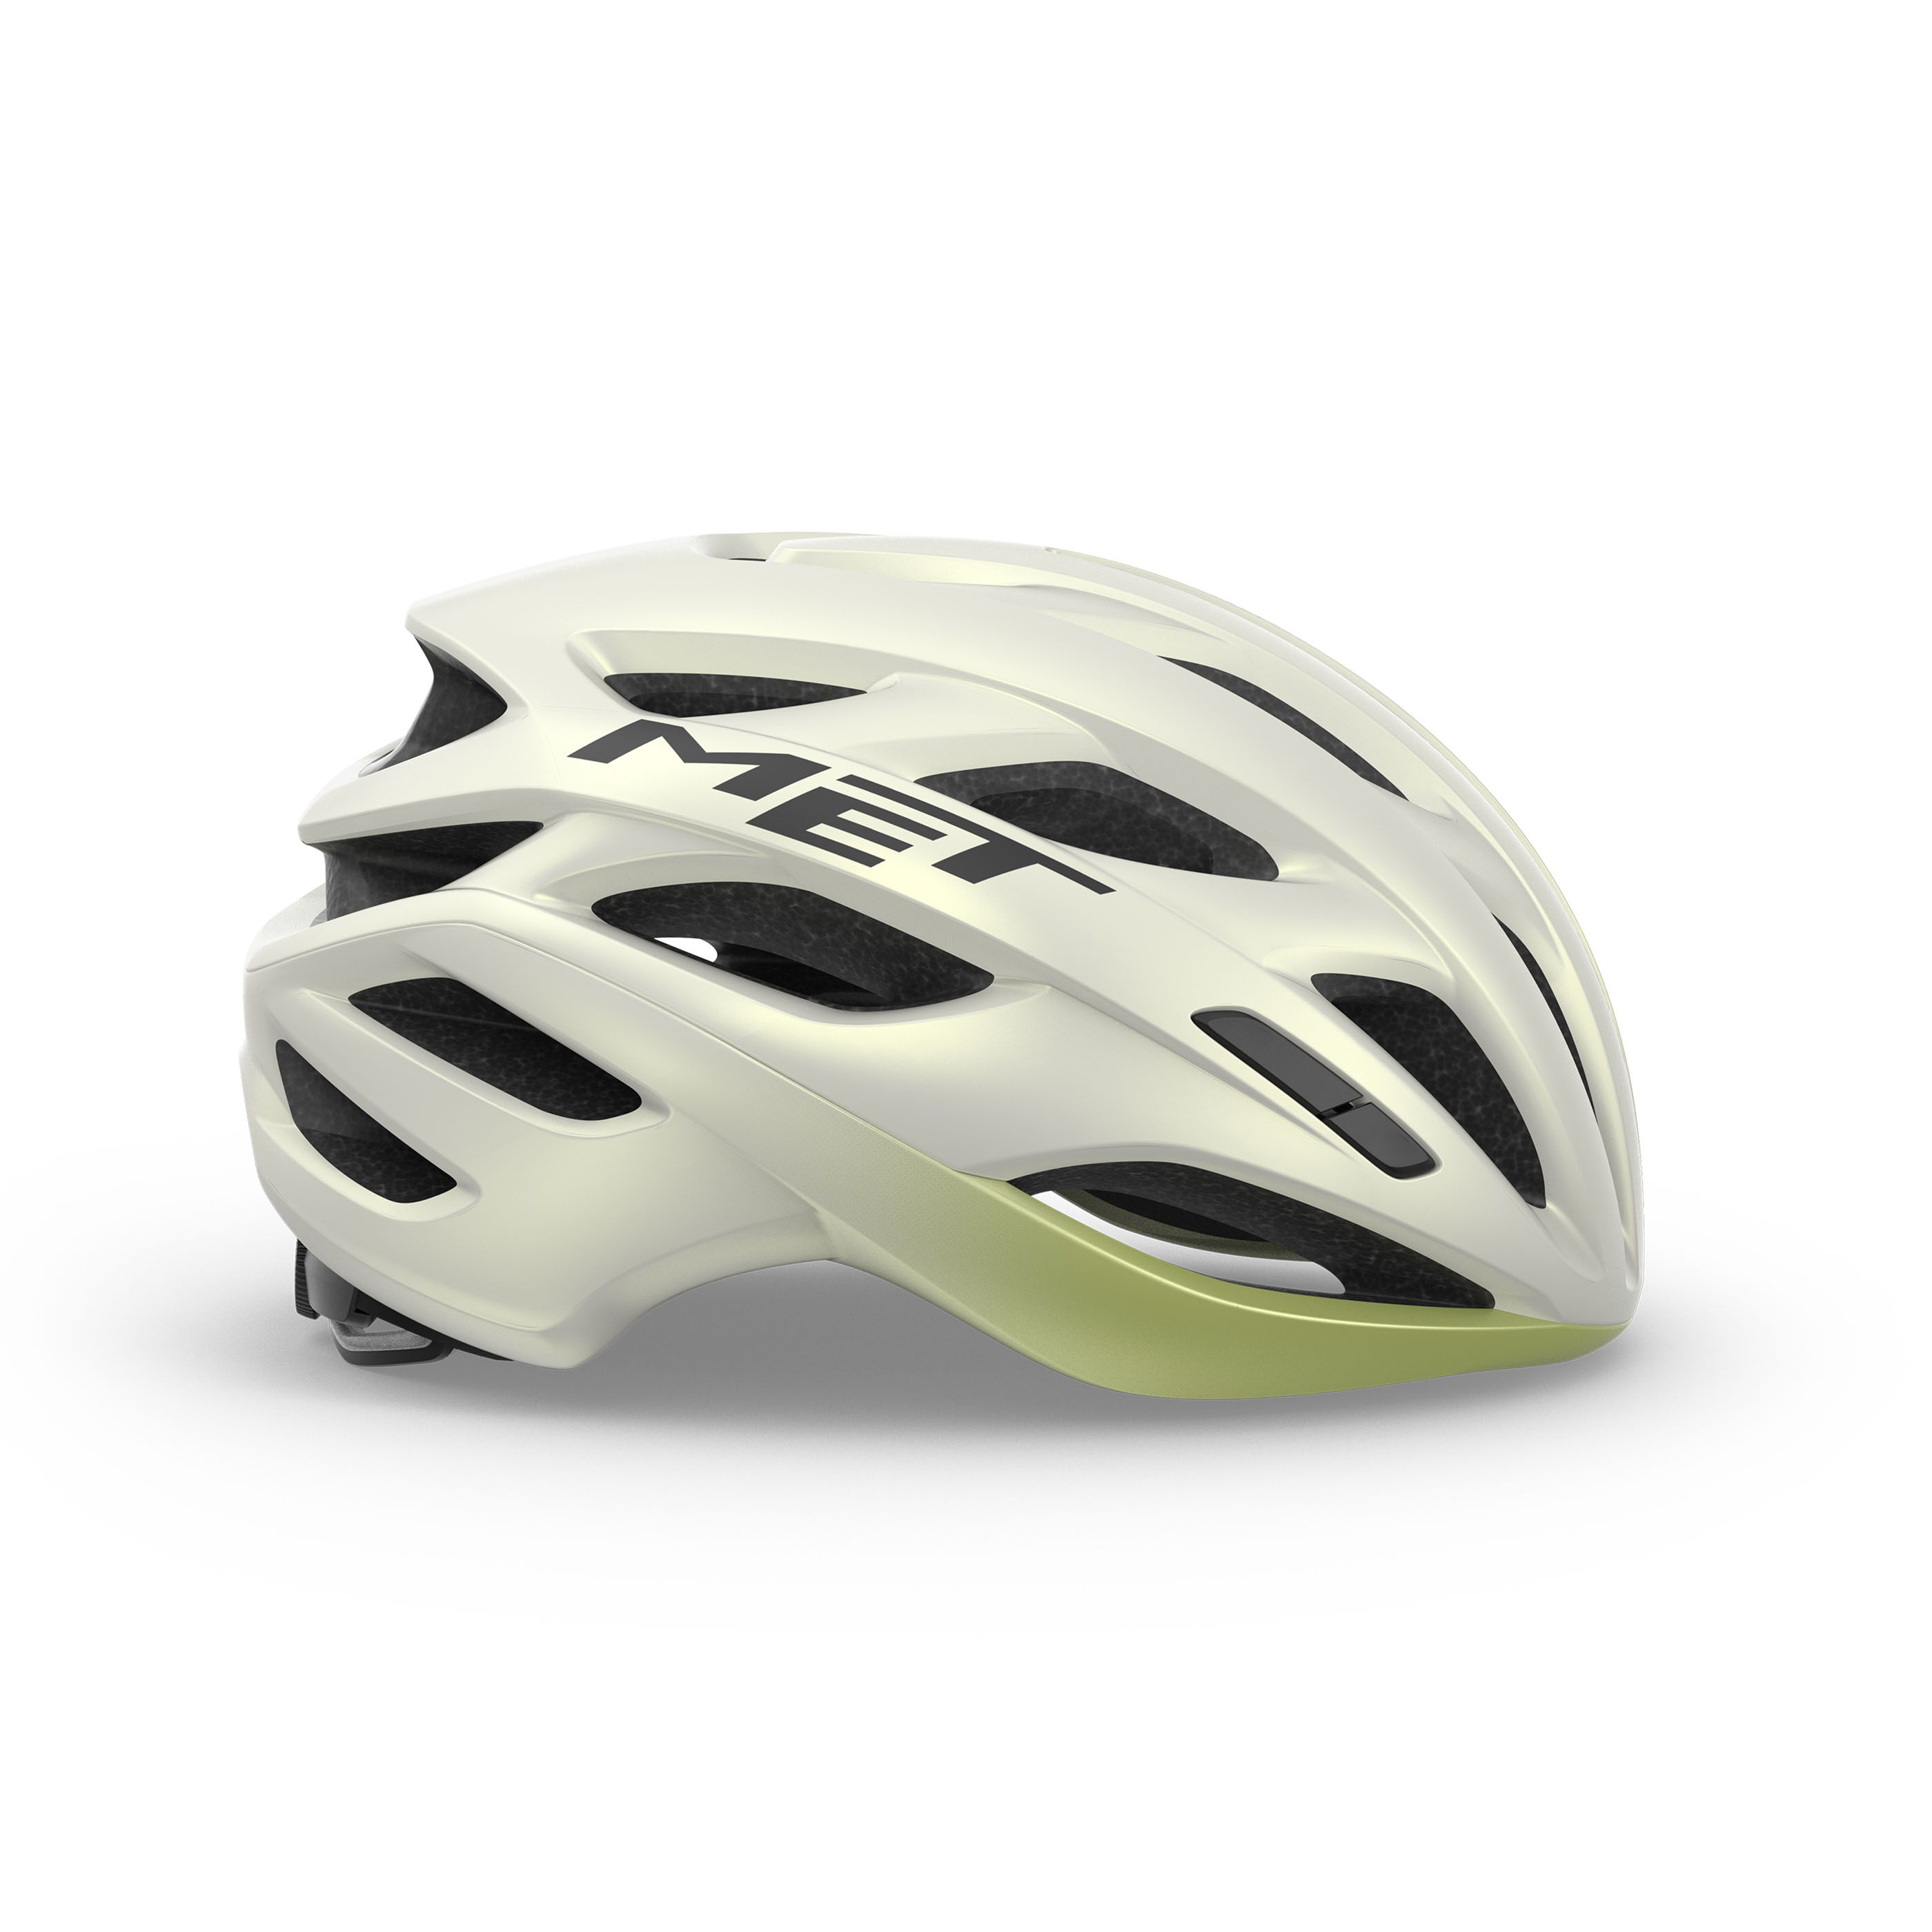 met-estro-mips-road-cycling-helmet-M139WH1-side